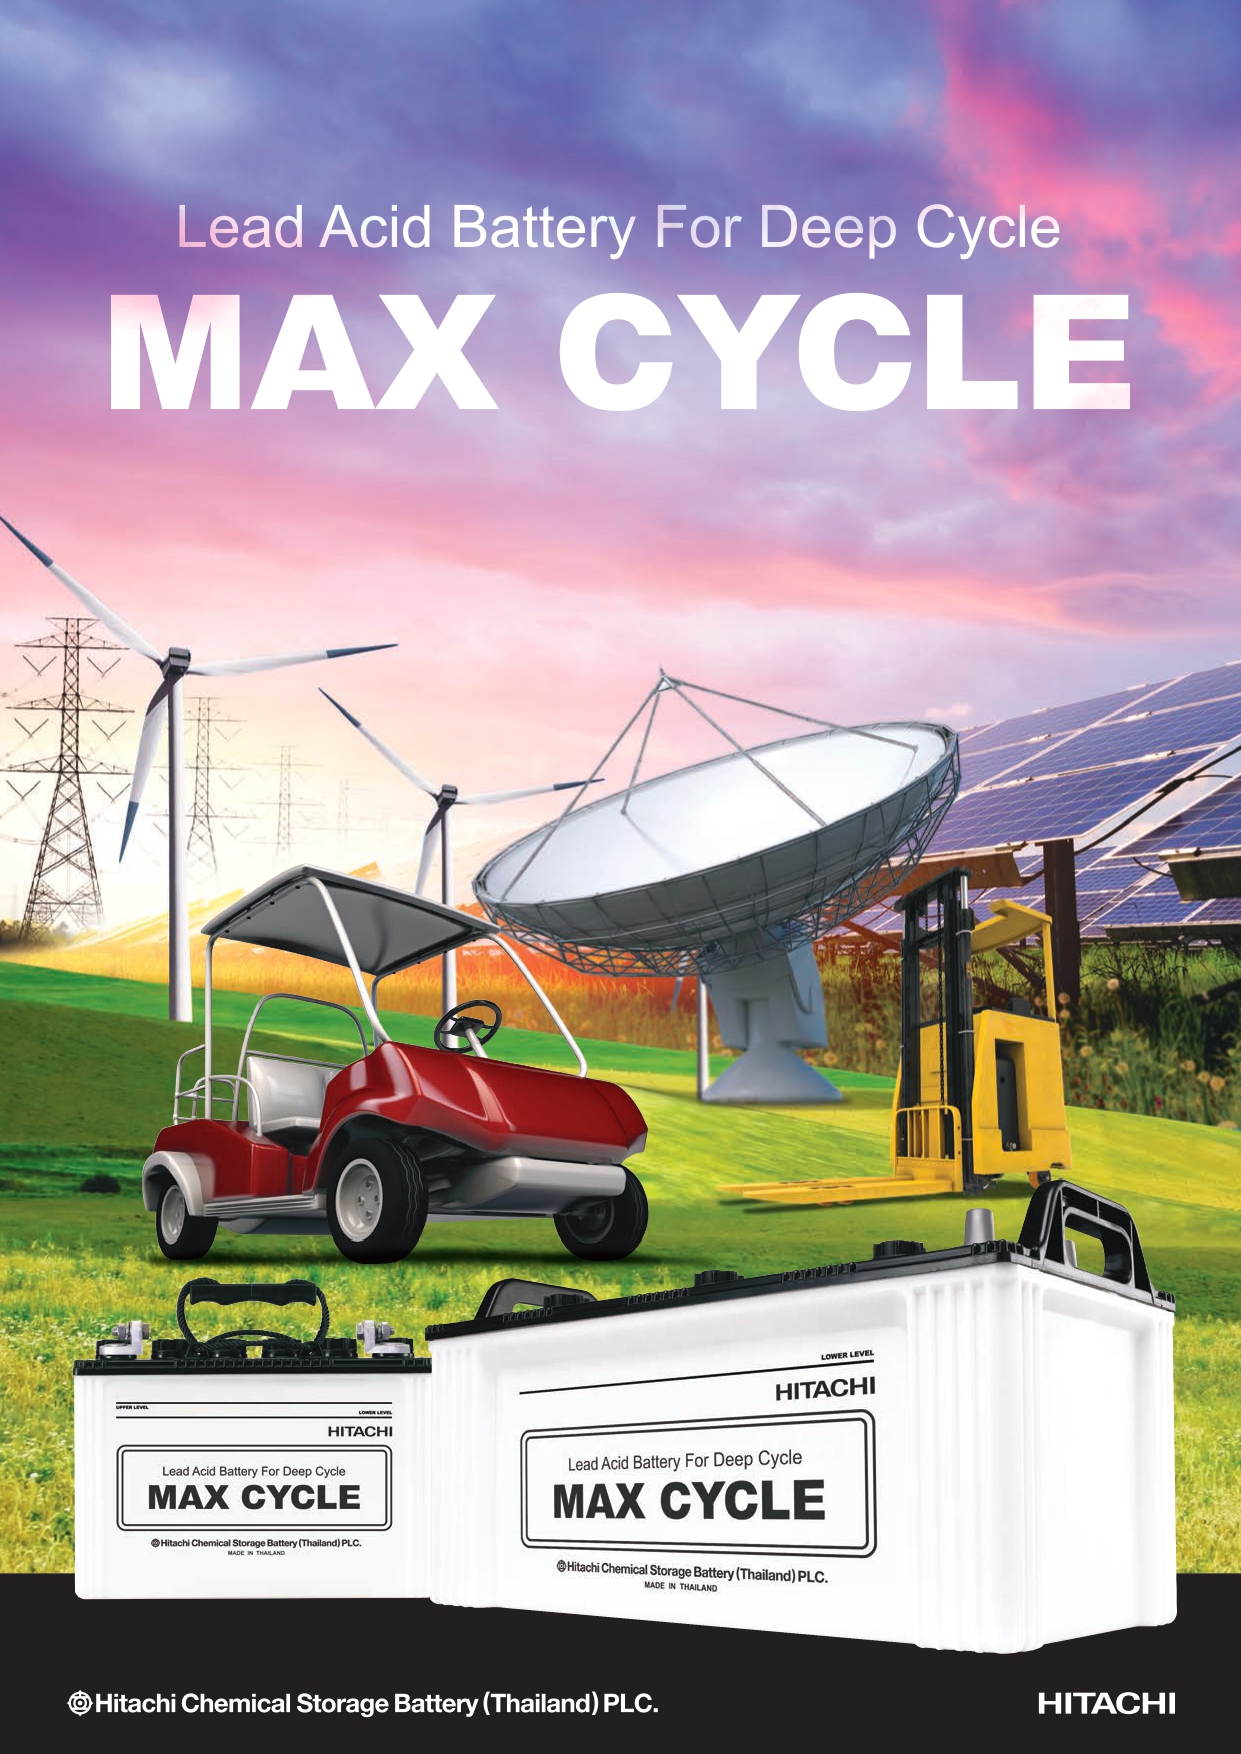 日立化成 MAX CYCLE EB バッテリー 開放型 12V EB160 (端子：LR 向き4)